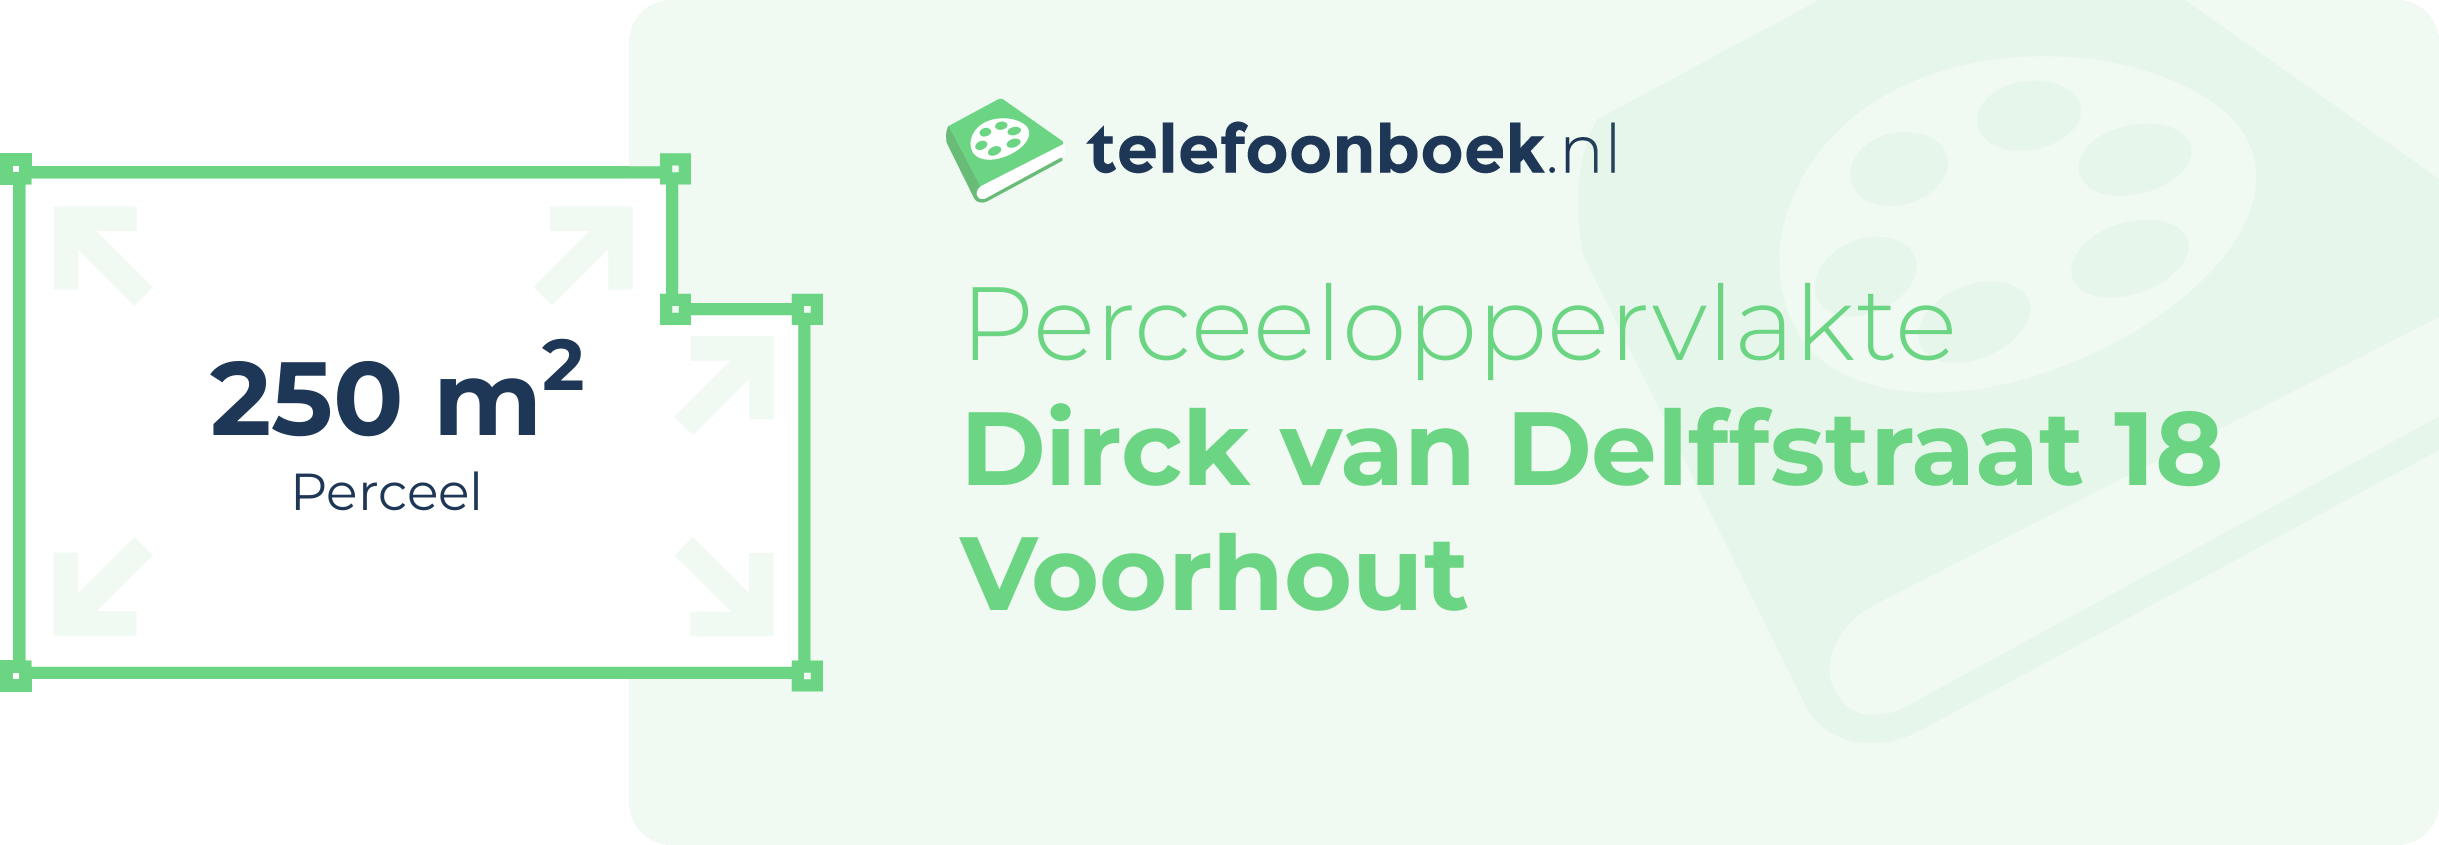 Perceeloppervlakte Dirck Van Delffstraat 18 Voorhout